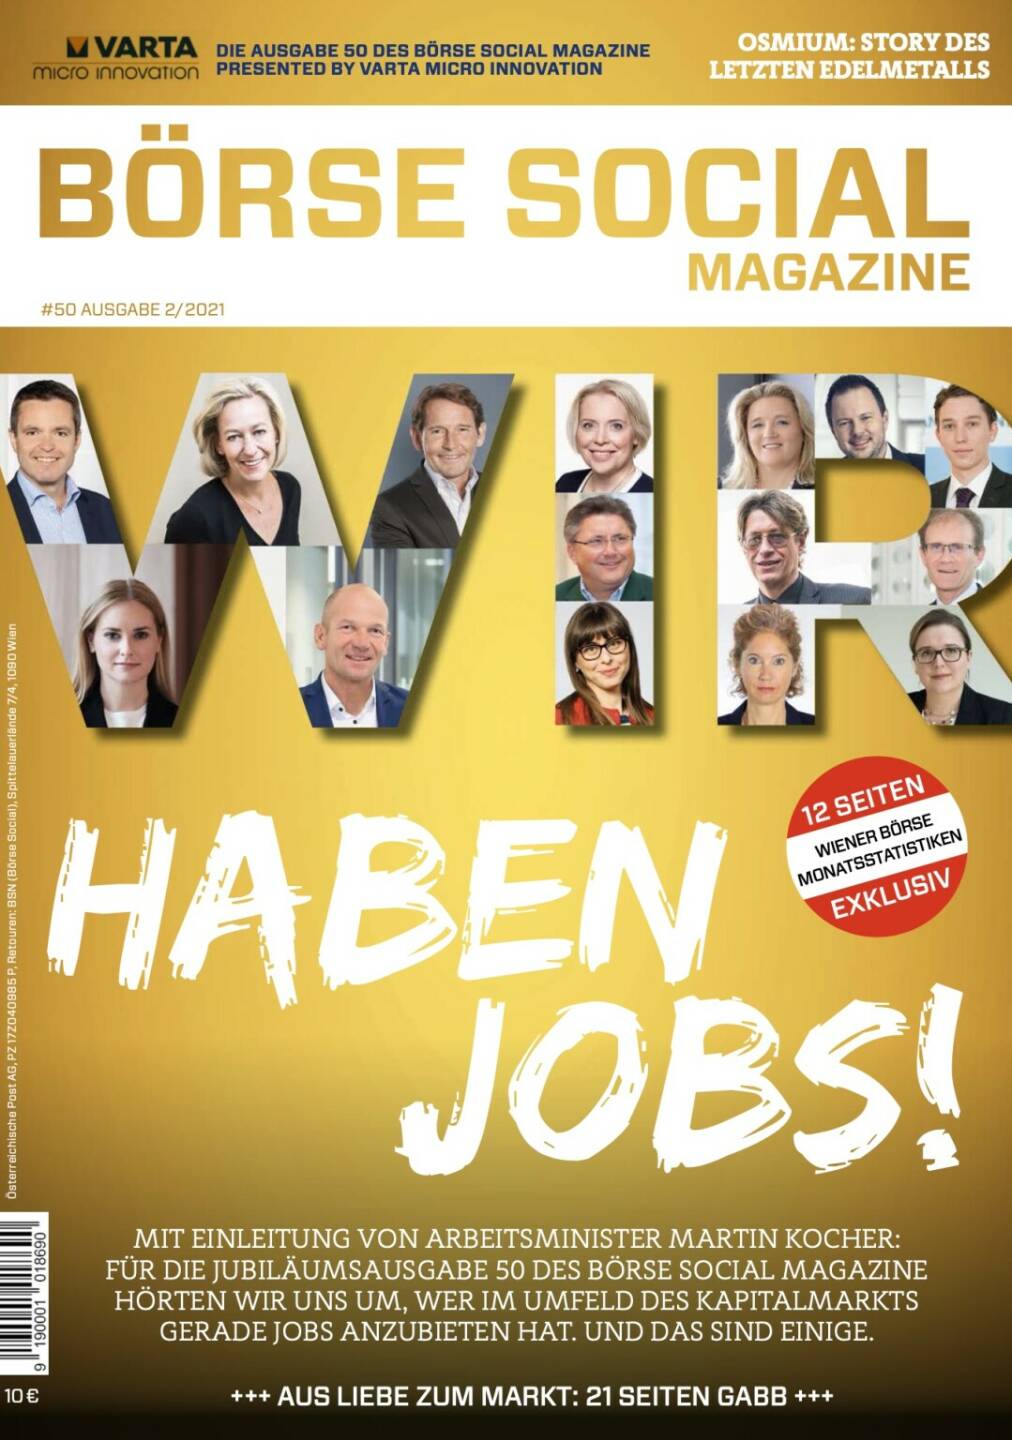 Magazine #50 - Februar 2021: „Wir haben Jobs!“ sagen 15 HR-Verantwortliche aus dem FInanzmarktumfeld. Einleitung Arbeitsminister Martin Kocher